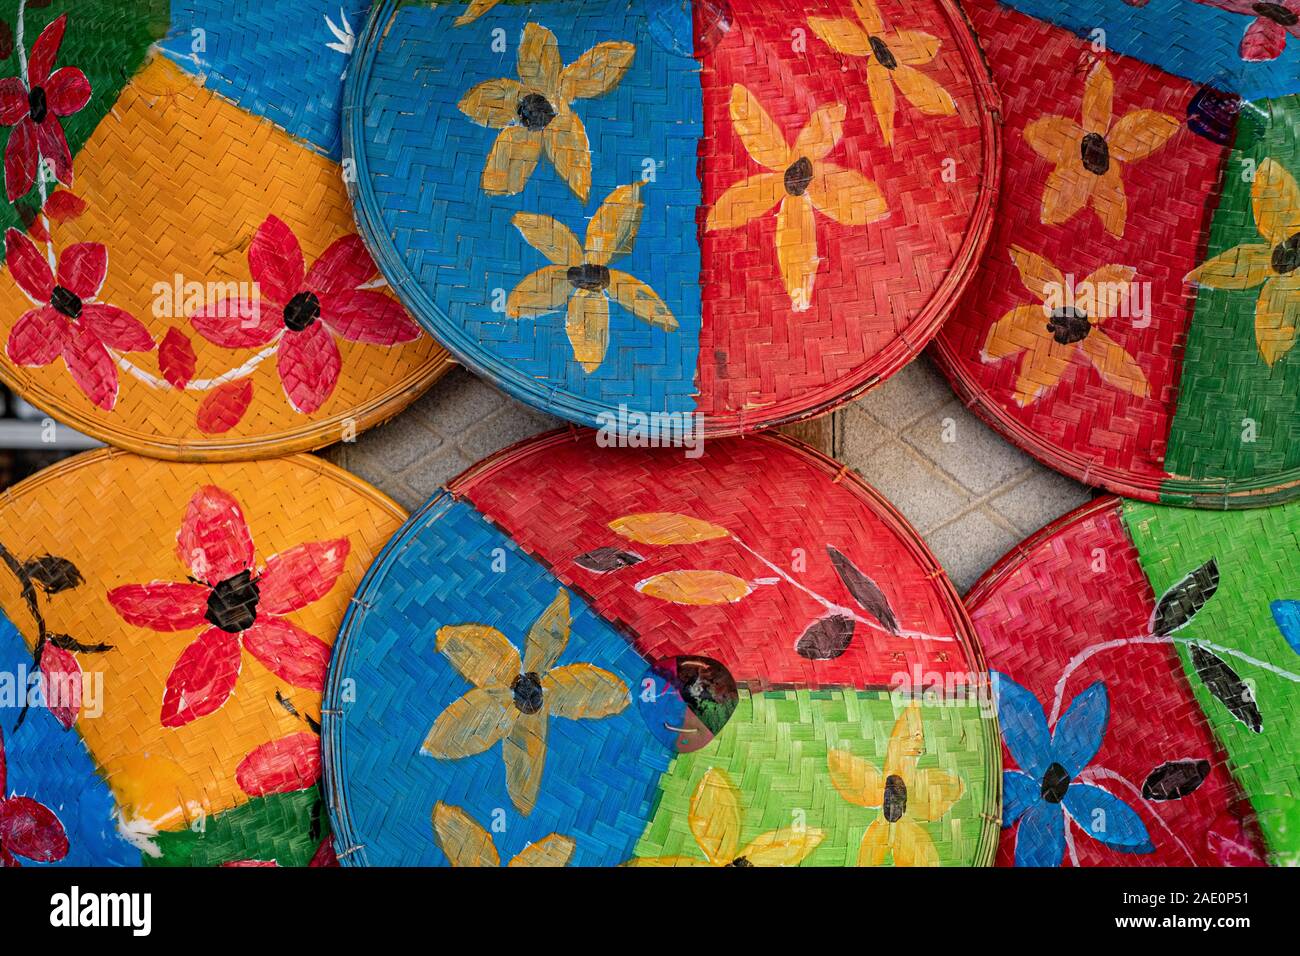 Farbenfroh Hüte der konischen Landwirt lackiert mit Blumenmotiven und hellen Primärfarben ein Geschäft entlang der Chindwin Fluss schmücken in Myanmar (Birma) Stockfoto